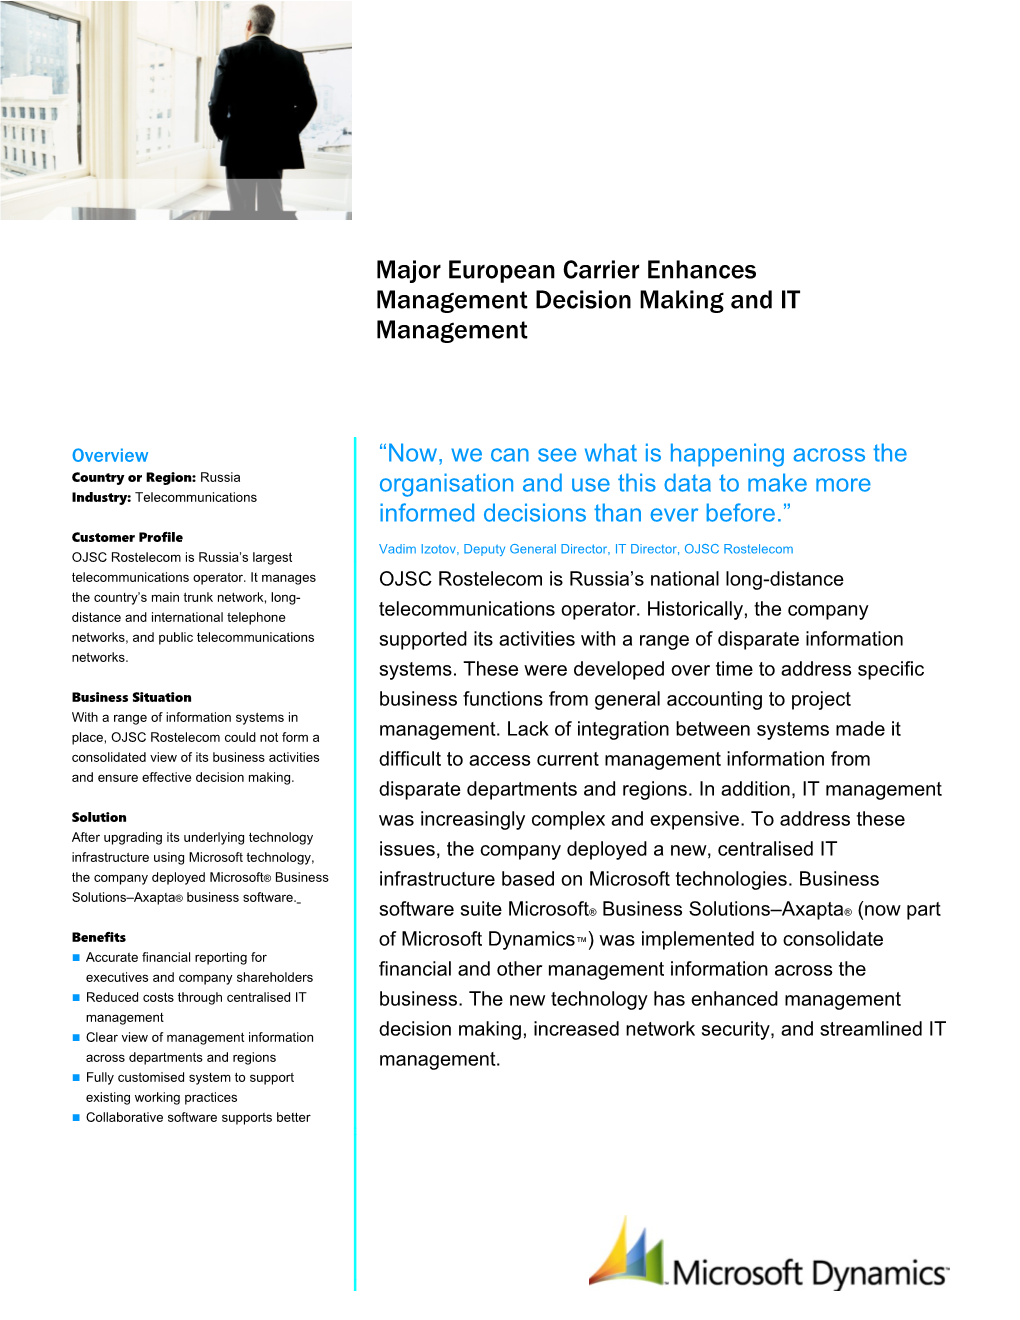 Major European Carrier Enhances Management Decision Making and IT Management